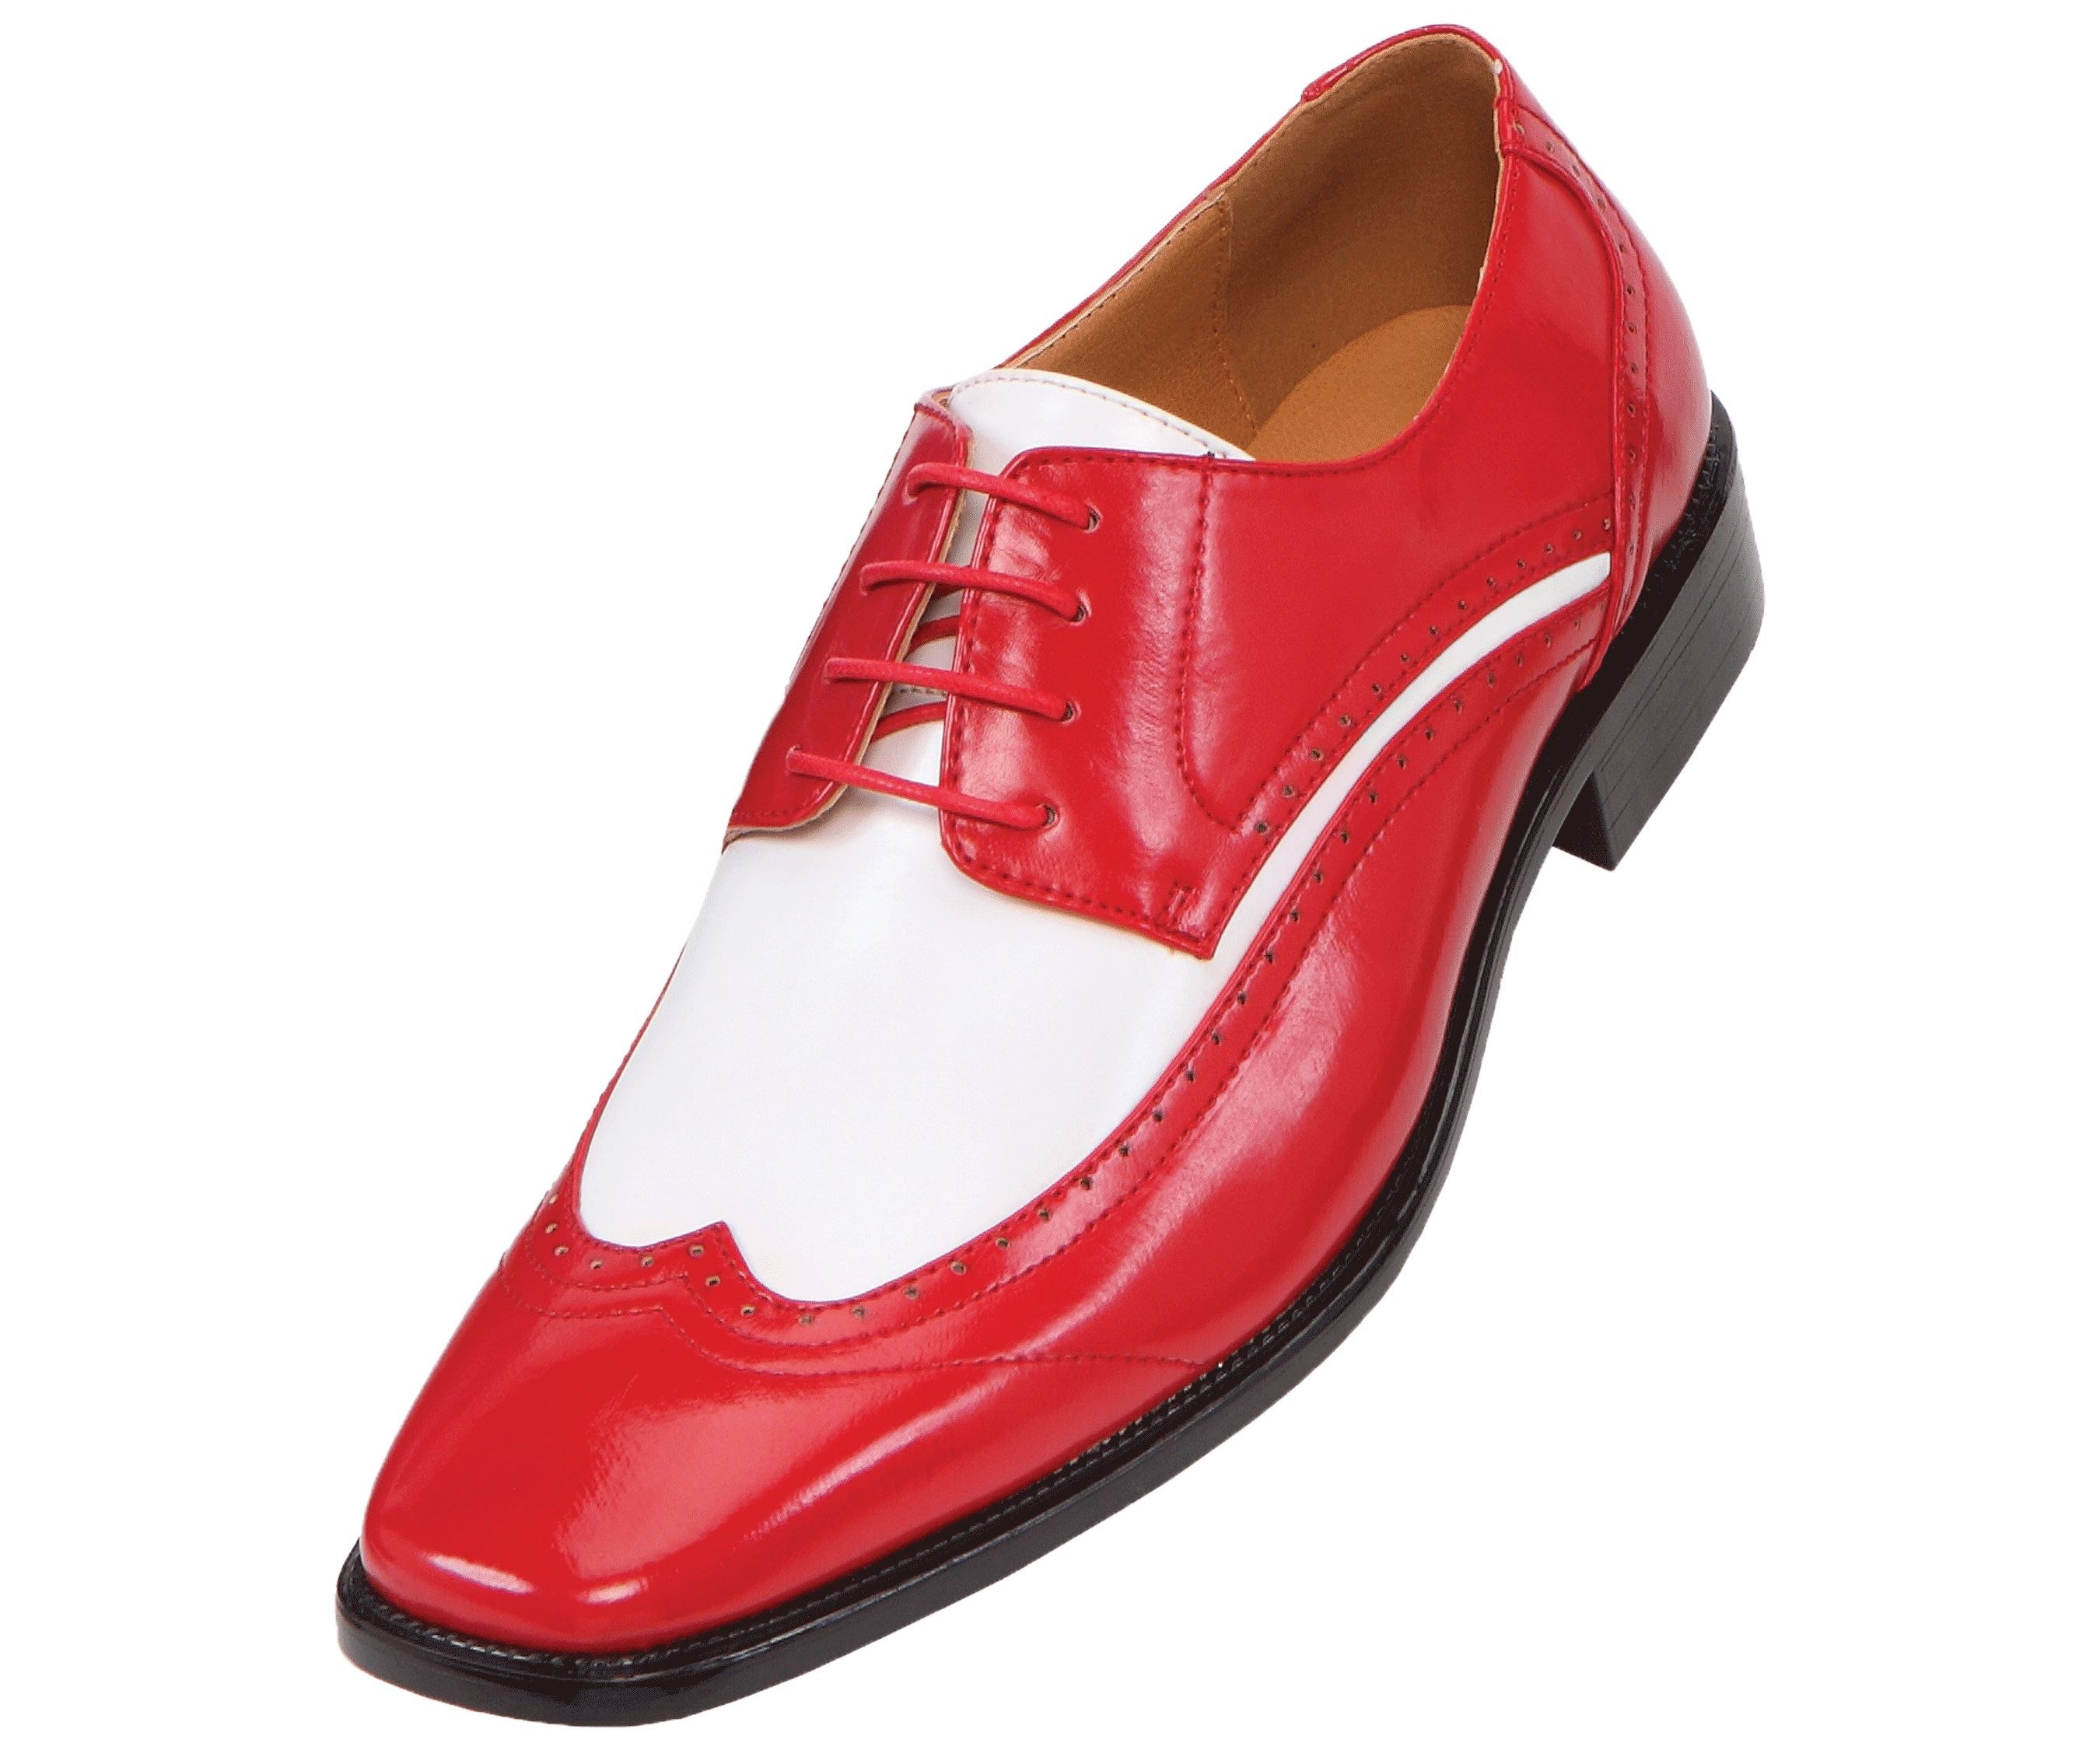 Красный туфли мужской. Красные туфли мужские. Красные ботинки. Туфли мужские кожаные красные. Красные лаковые туфли мужские.